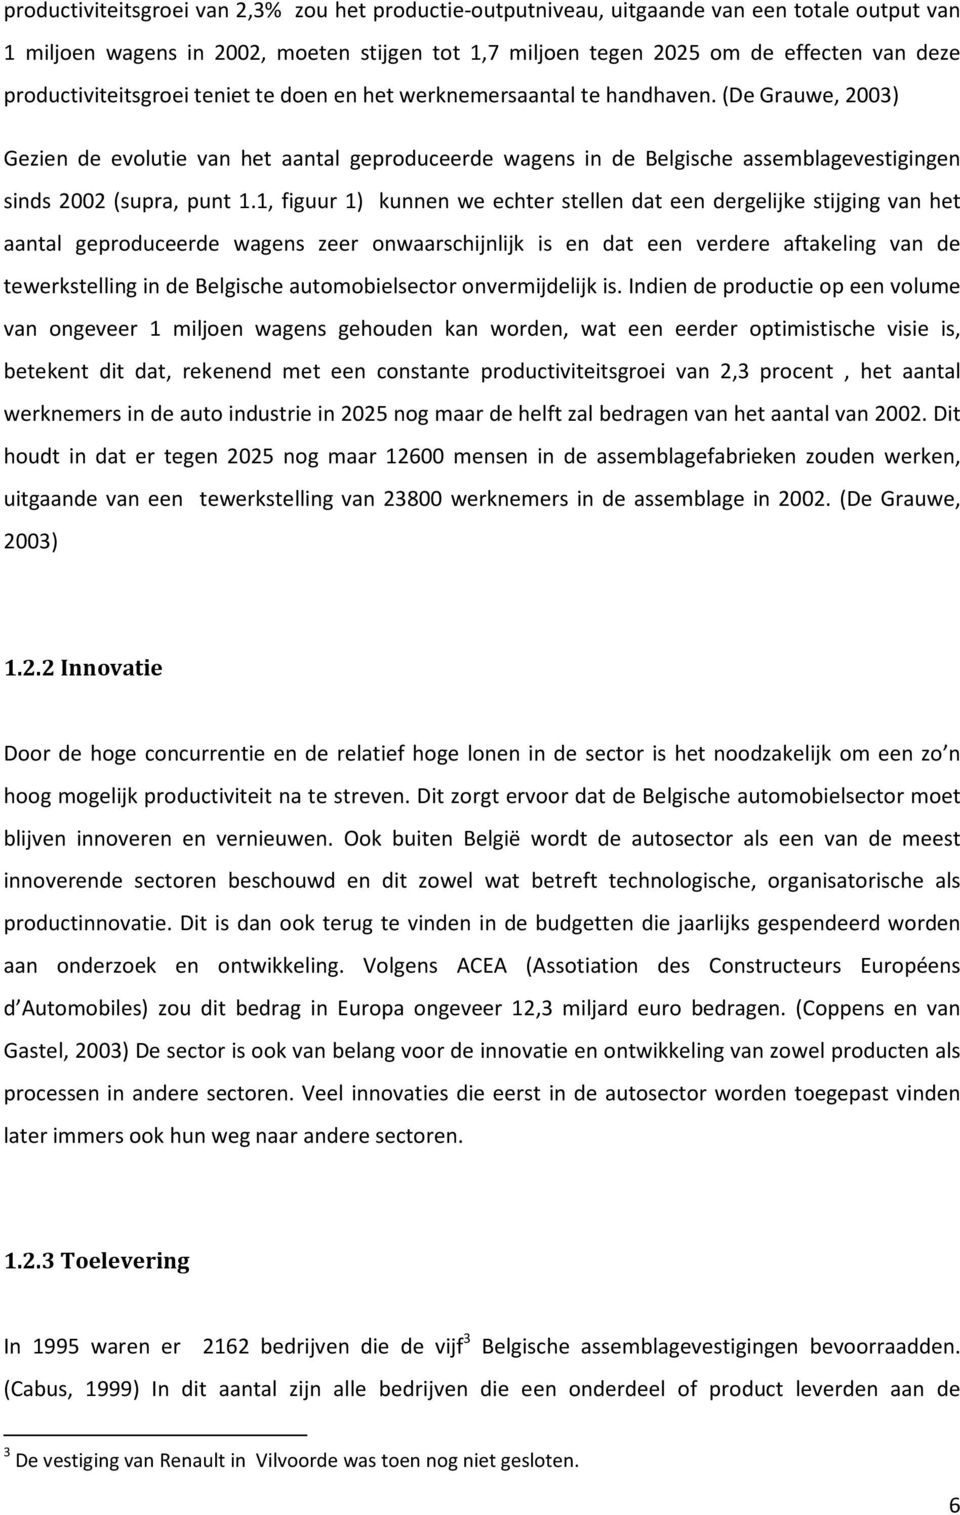 (De Grauwe, 2003) Gezien de evolutie van het aantal geproduceerde wagens in de Belgische assemblagevestigingen sinds 2002 (supra, punt 1.